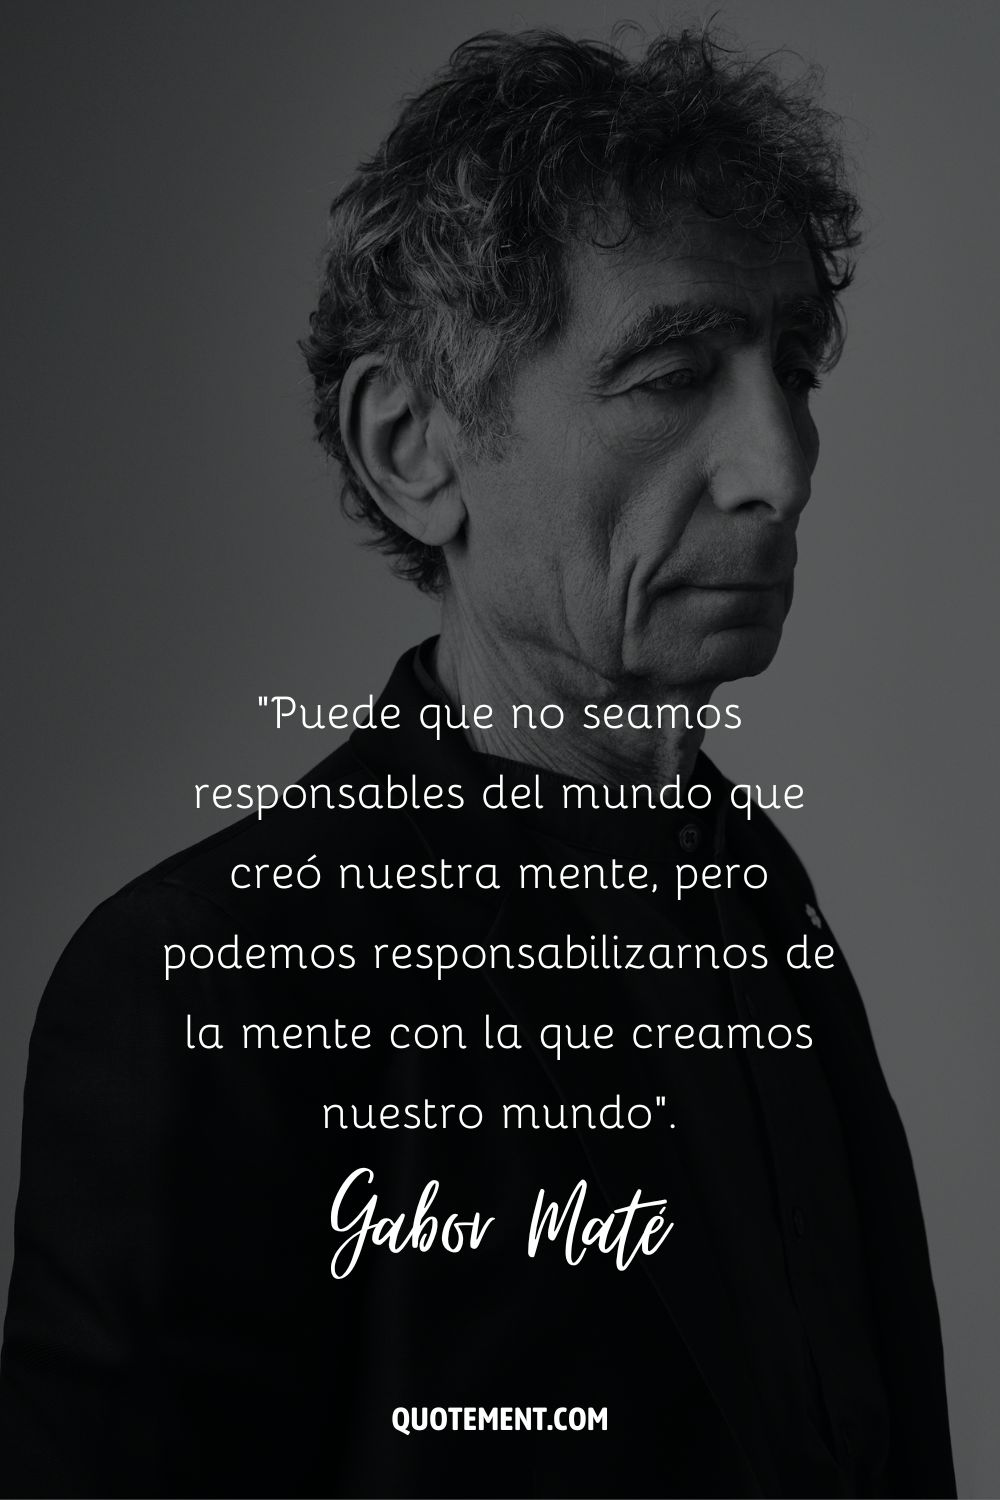 Un retrato lateral en blanco y negro de Gabor Mate que representa la mejor cita de Gabor Mate